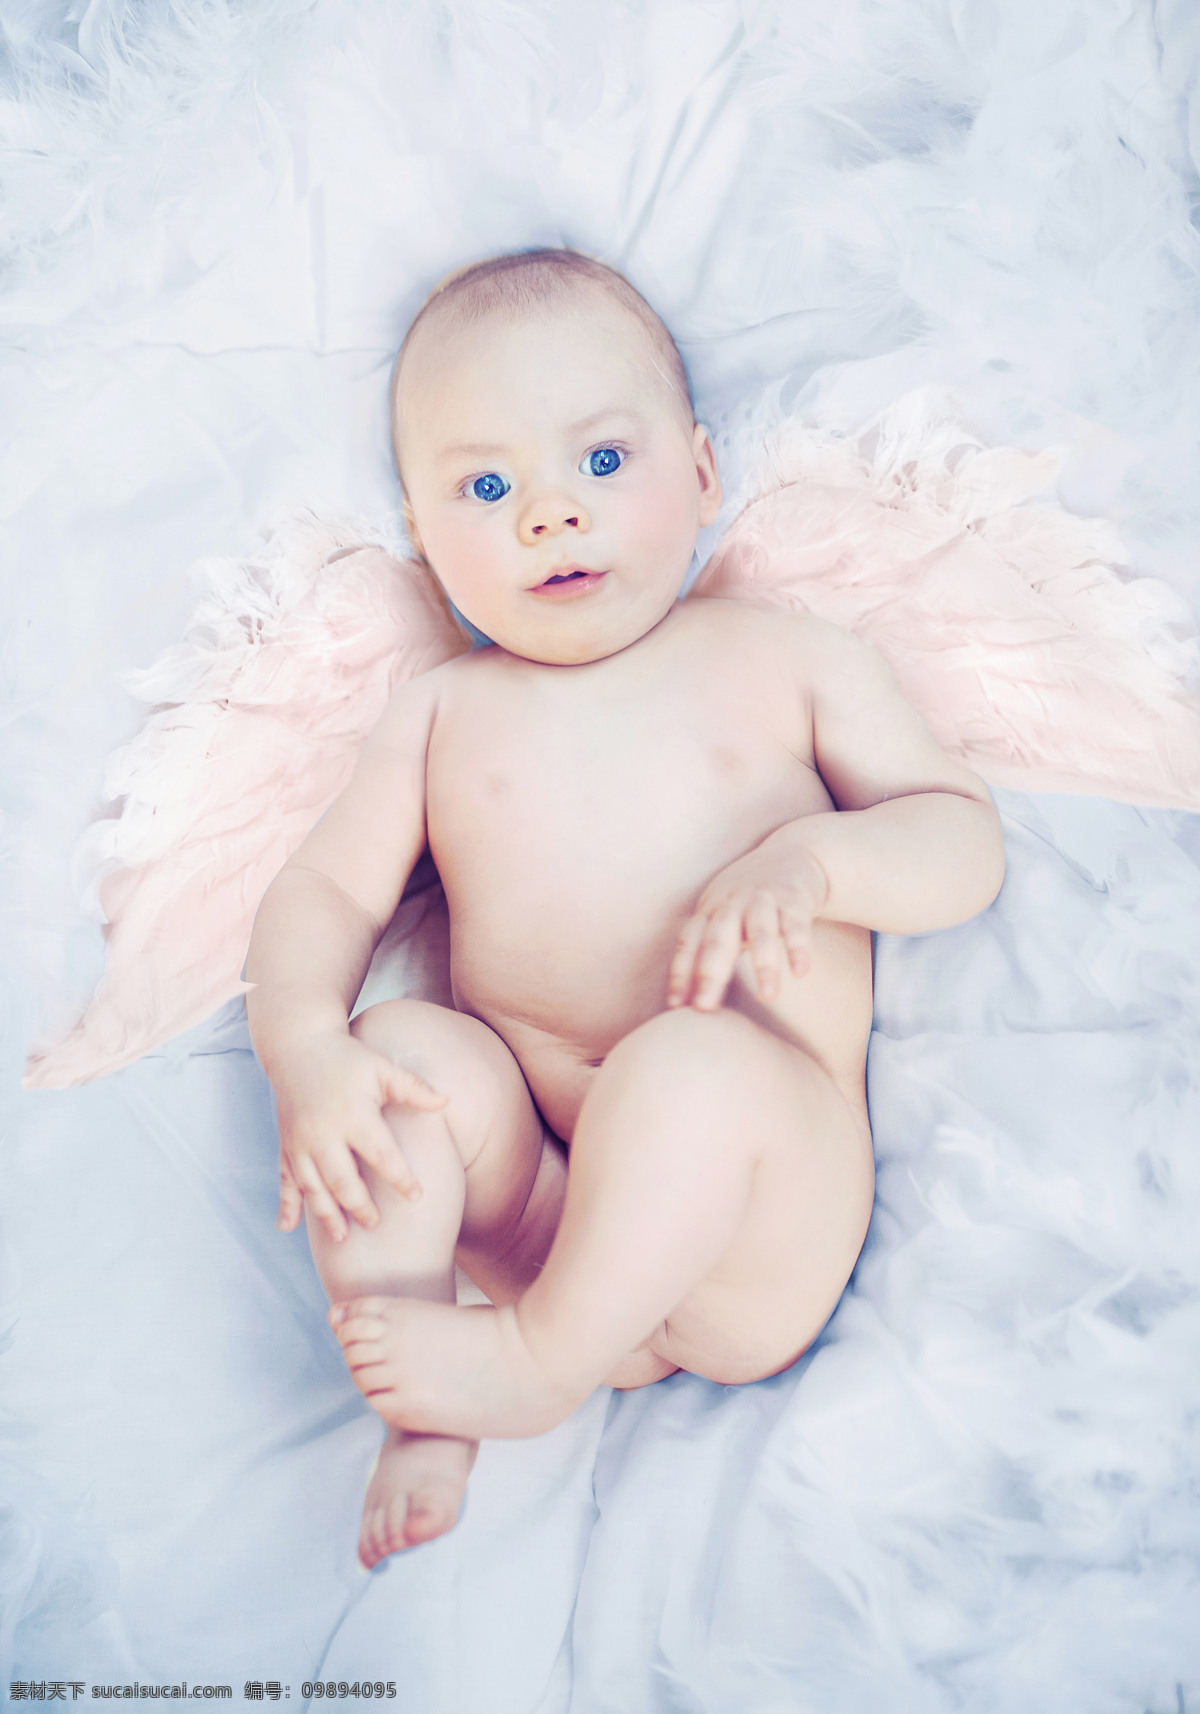 外国 天使 婴儿 宝宝 外国宝宝 翅膀 床 儿童图片 人物图片